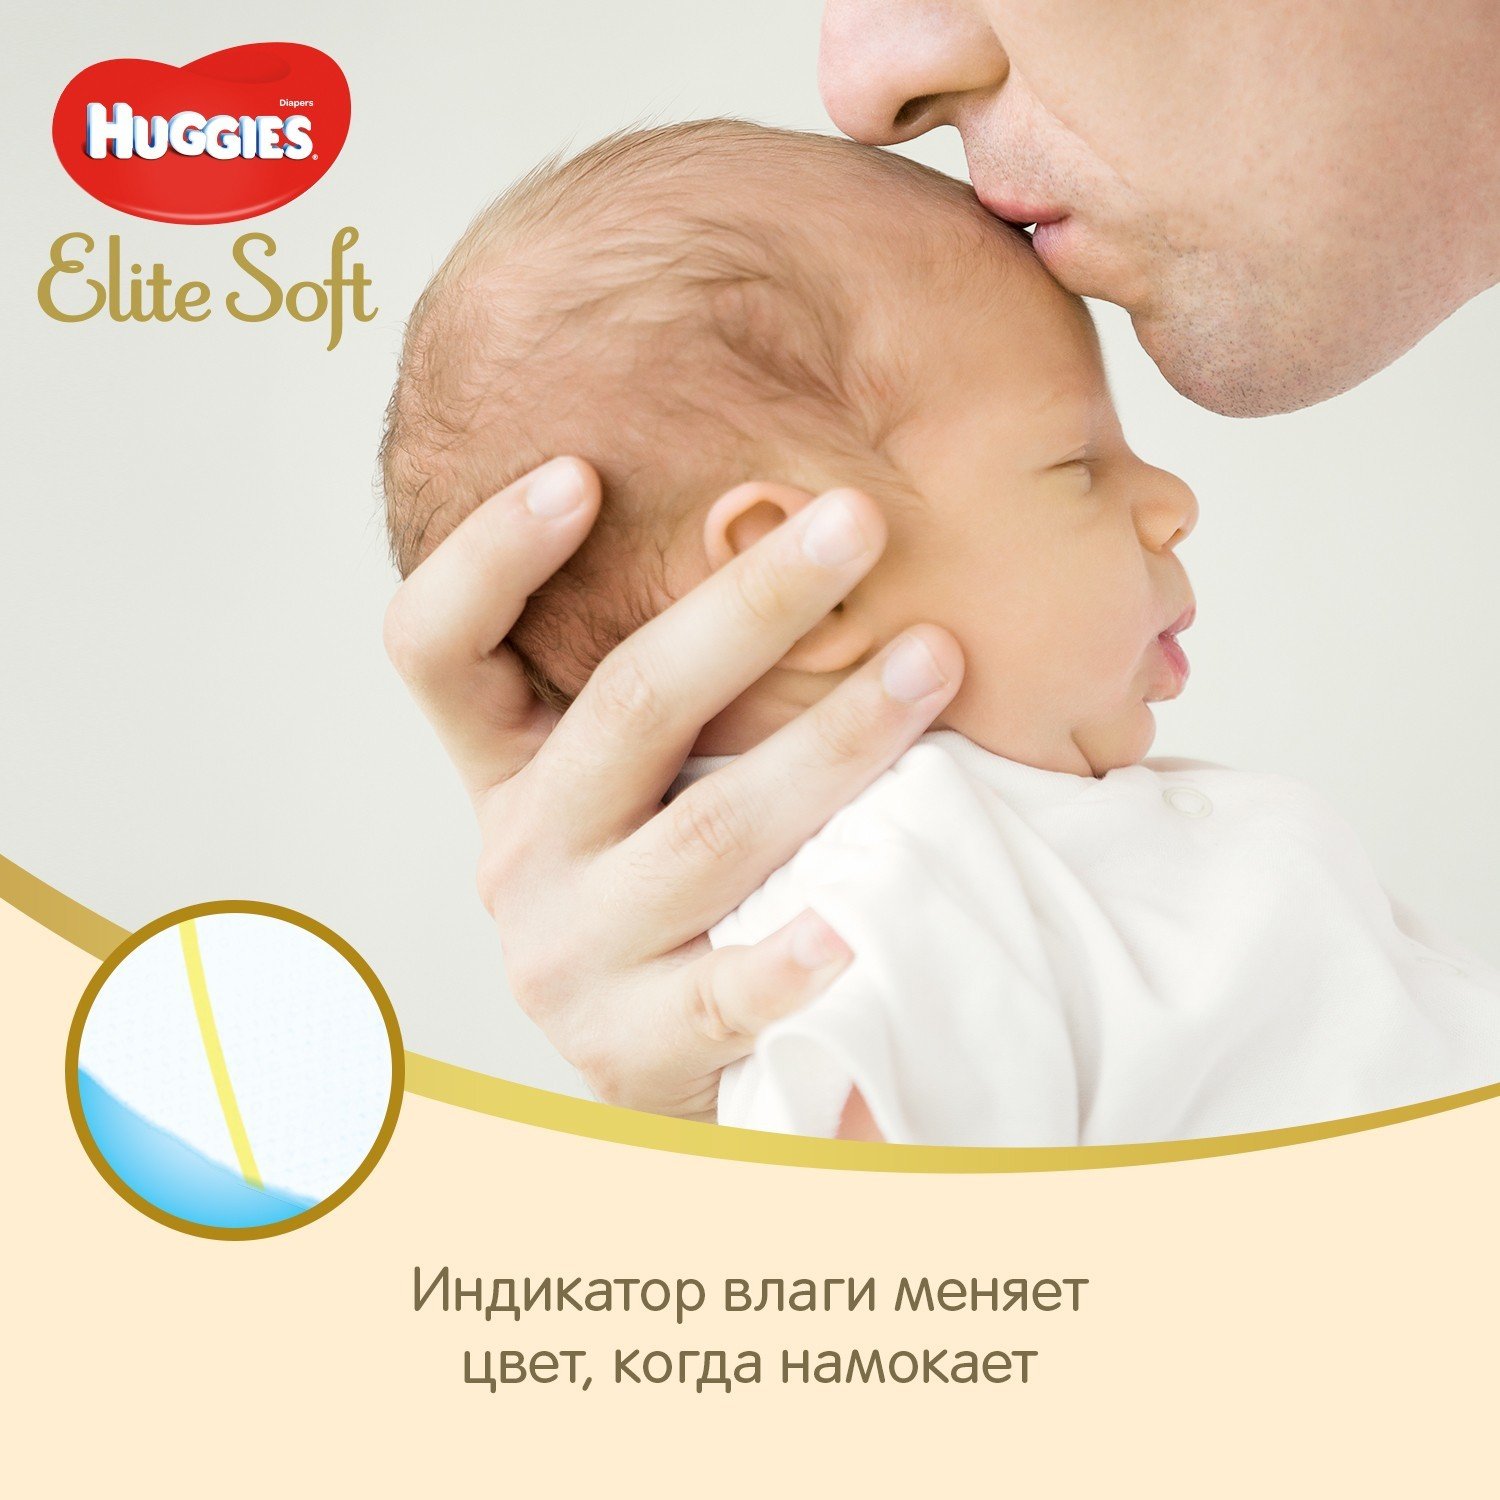 Подгузники Huggies Elite Soft для новорожденных 2 4-6кг 164шт